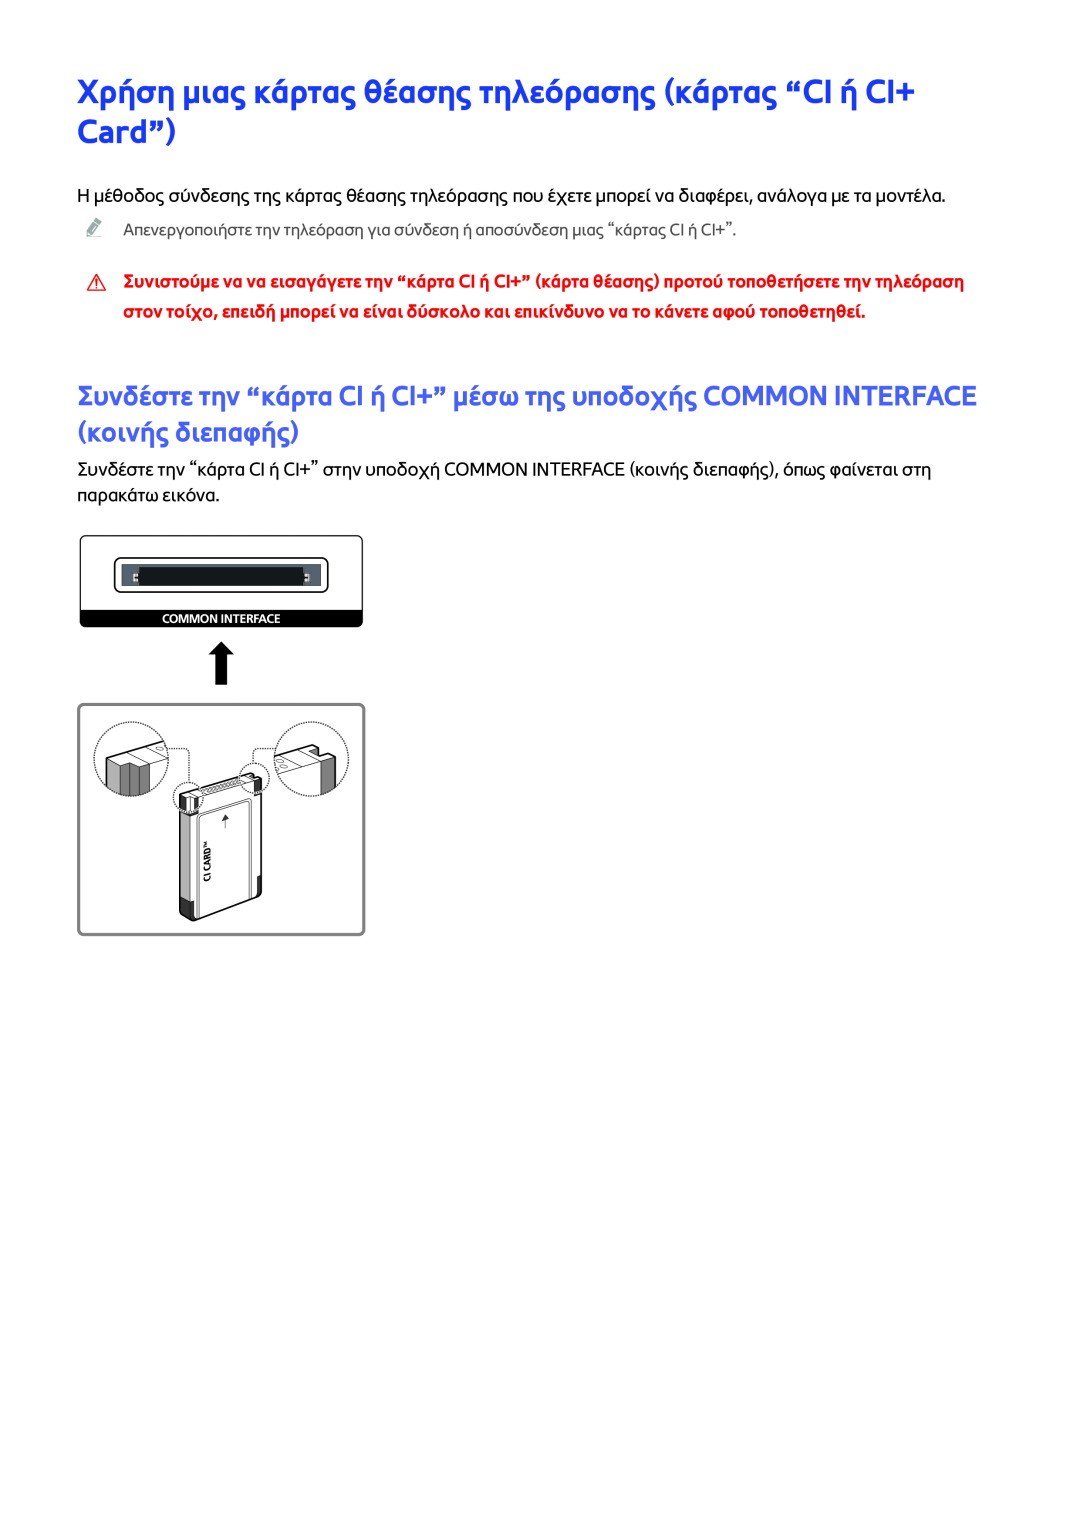 Samsung UE40J6240AWXXH, UE50J6240AWXXH, UE48J6300AWXXH manual Χρήση μιας κάρτας θέασης τηλεόρασης κάρτας “CI ή CI+ Card” 